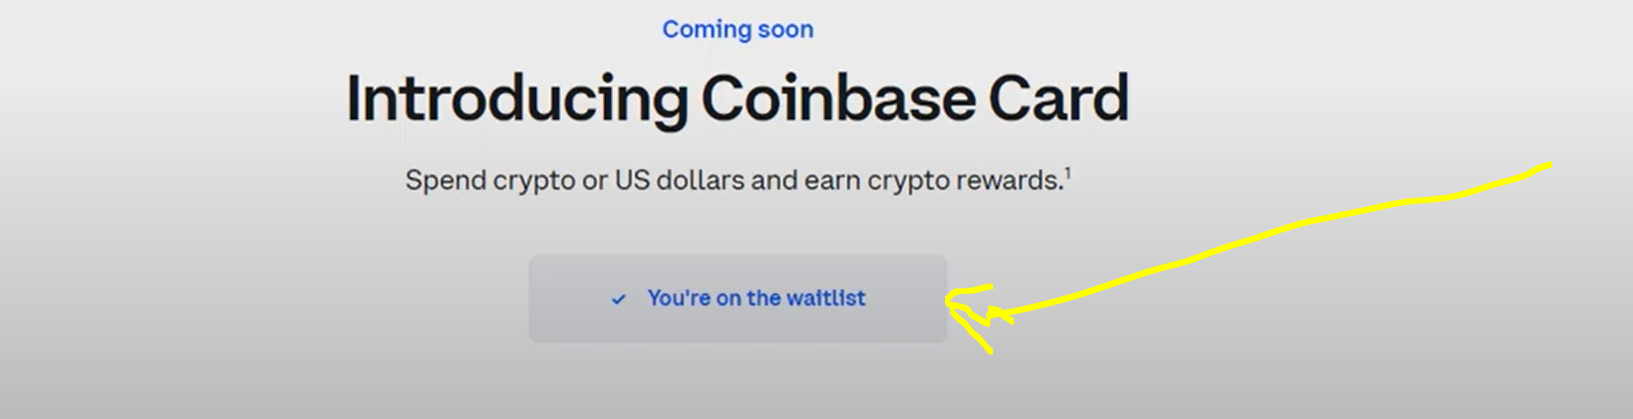 Coinbase official website